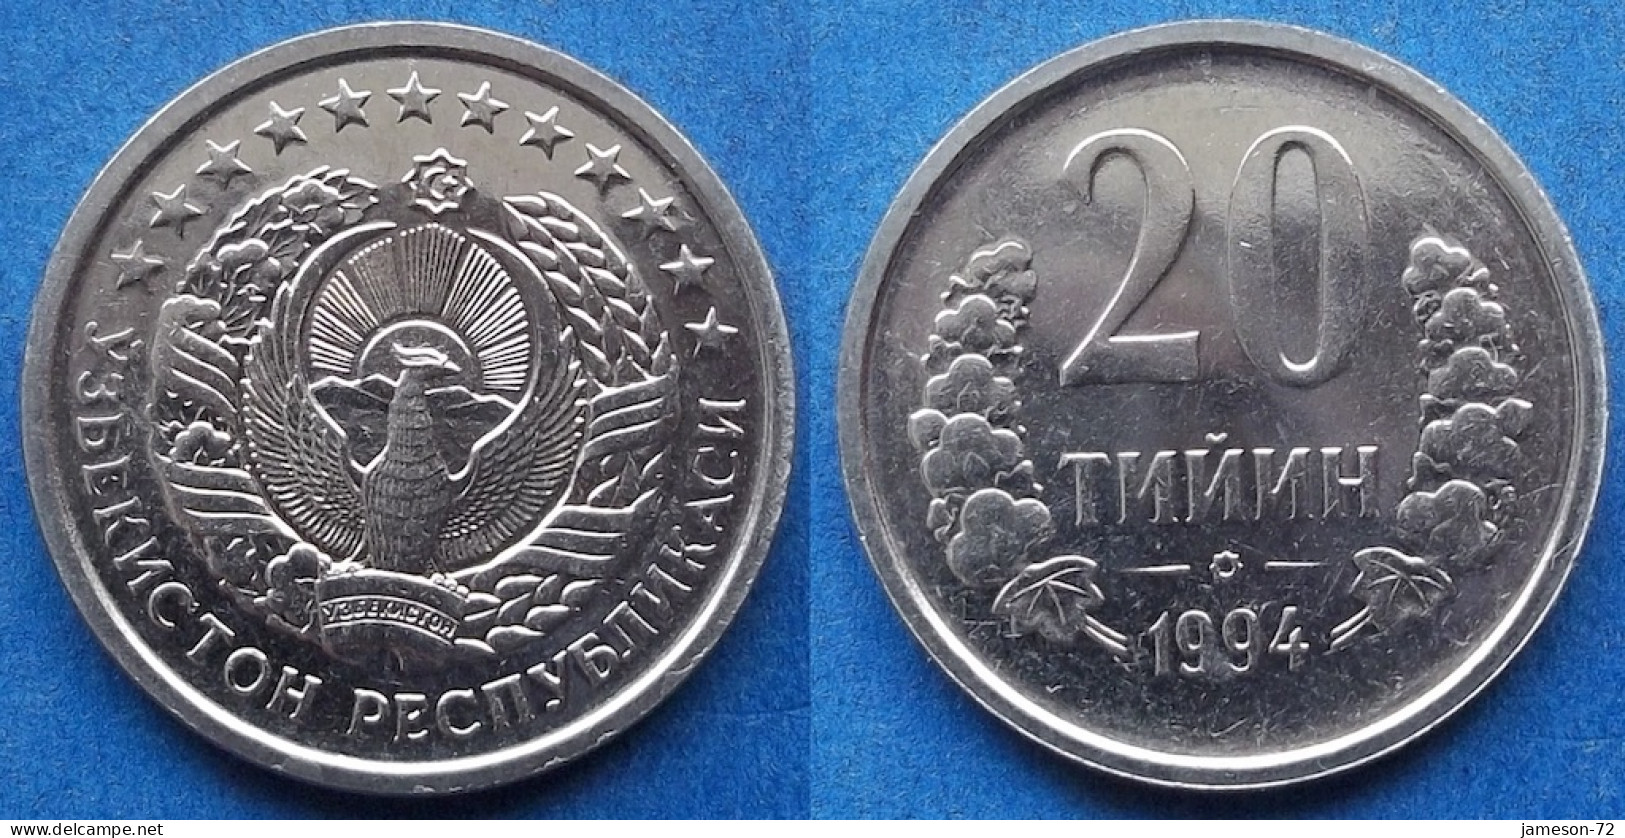 UZBEKISTAN - 20 Tiyin 1994 KM# 5 Independent Republic (1991) - Edelweiss Coins - Usbekistan